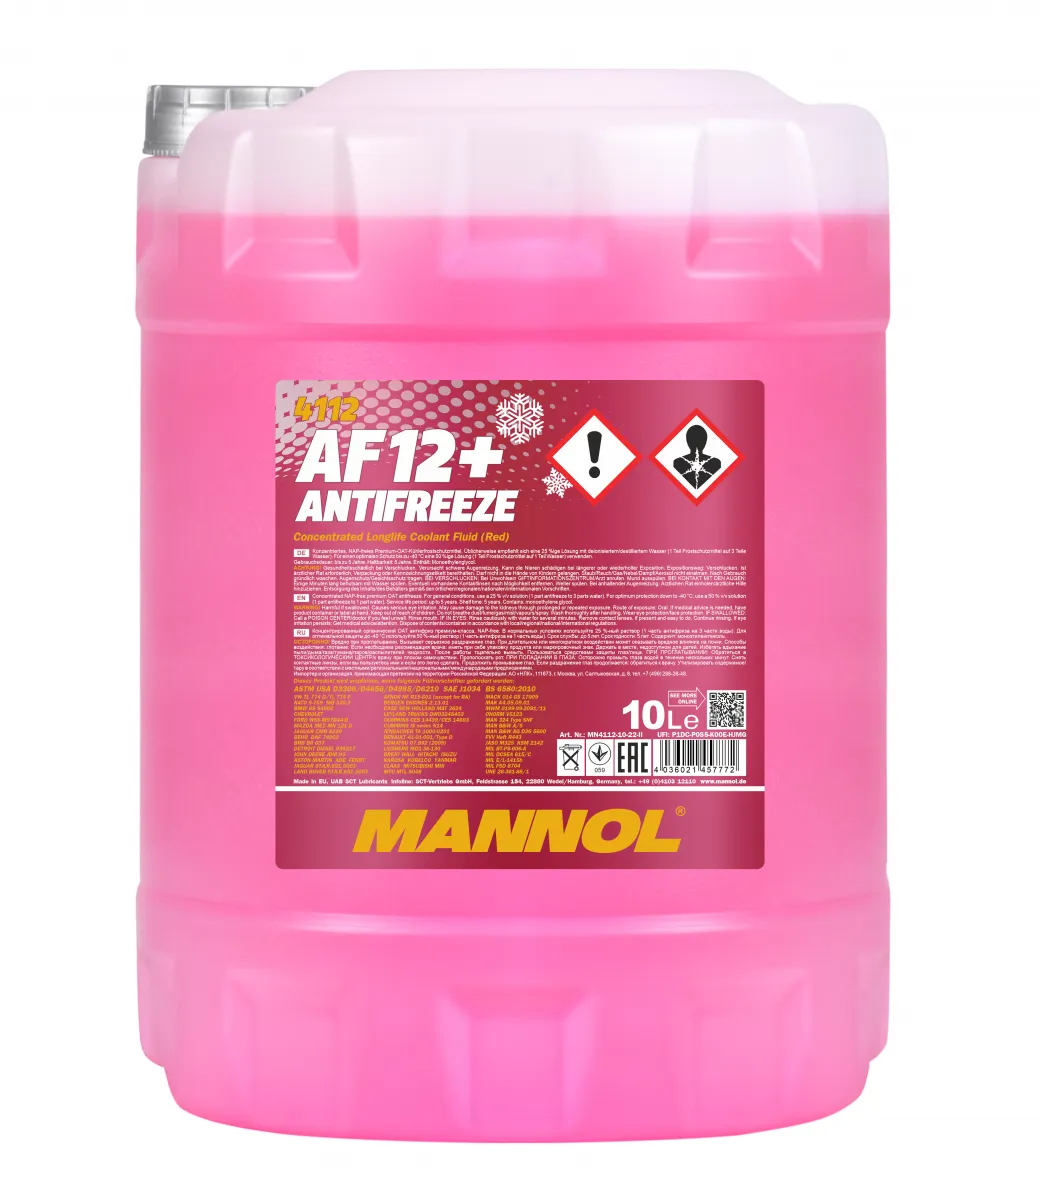 mannol antifreeze af12+#1